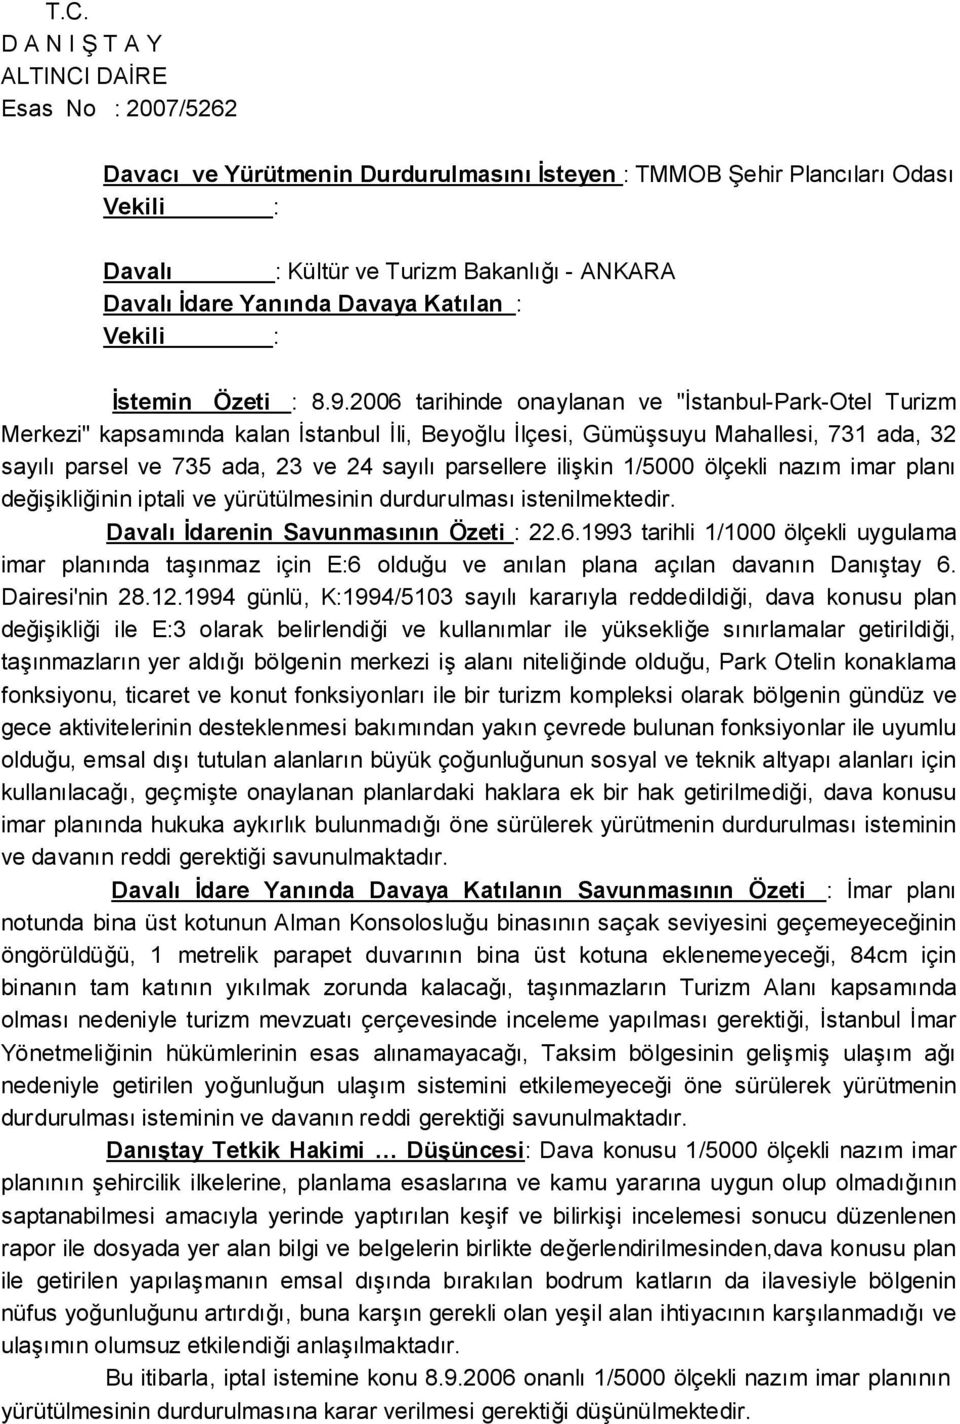 2006 tarihinde onaylanan ve "İstanbul-Park-Otel Turizm Merkezi" kapsamında kalan İstanbul İli, Beyoğlu İlçesi, Gümüşsuyu Mahallesi, 731 ada, 32 sayılı parsel ve 735 ada, 23 ve 24 sayılı parsellere